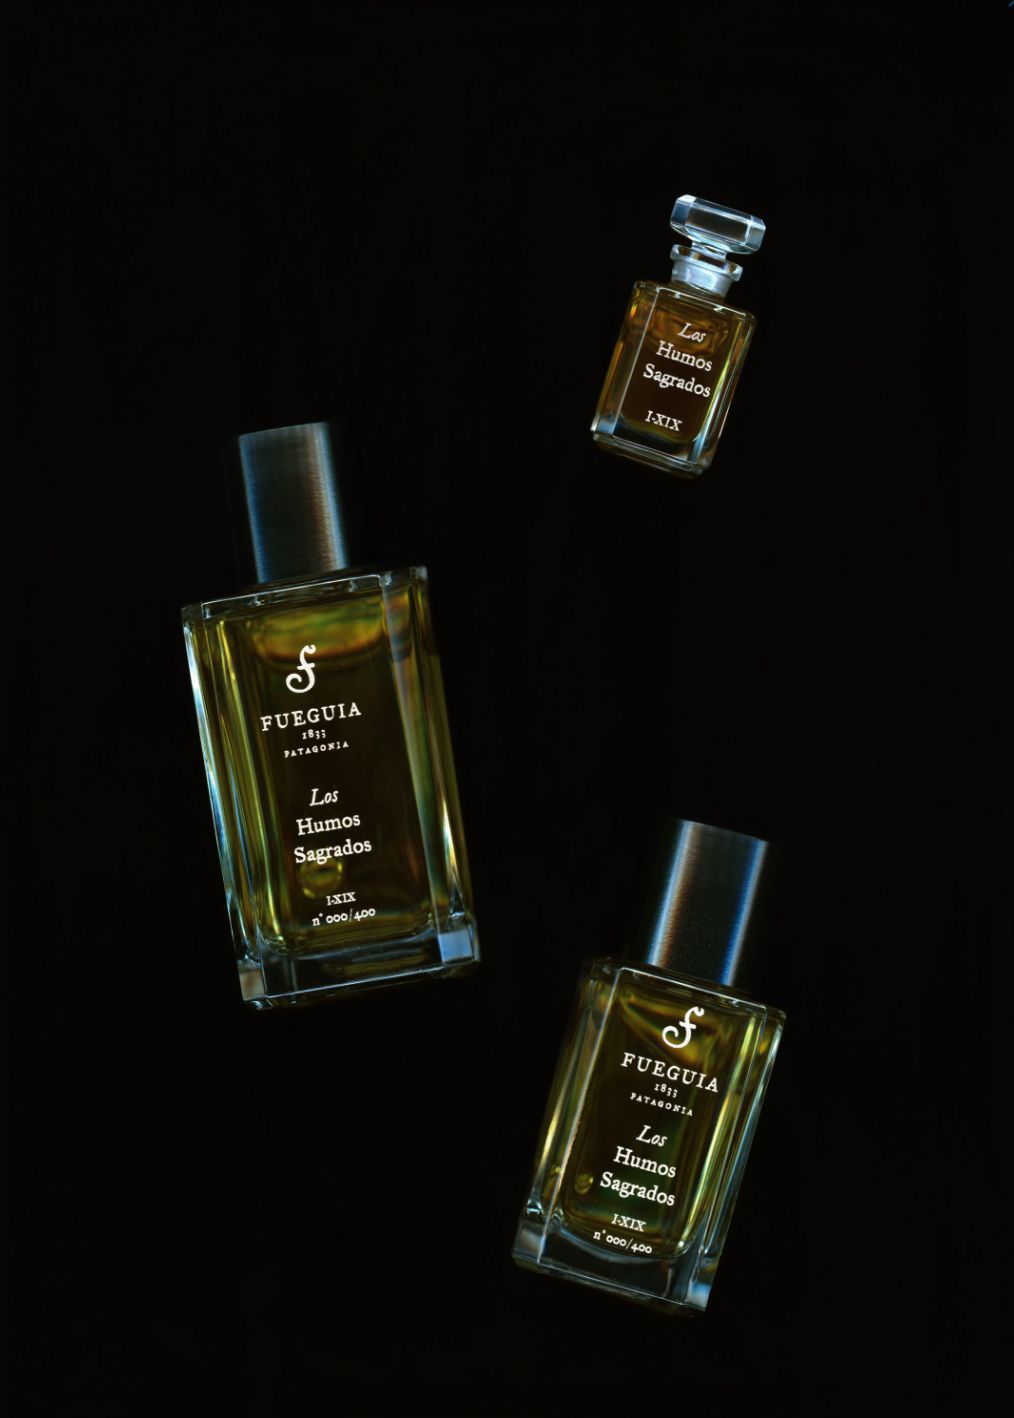 Los Humos Sagrados Fueguia 1833 perfumy - to perfumy dla kobiet i